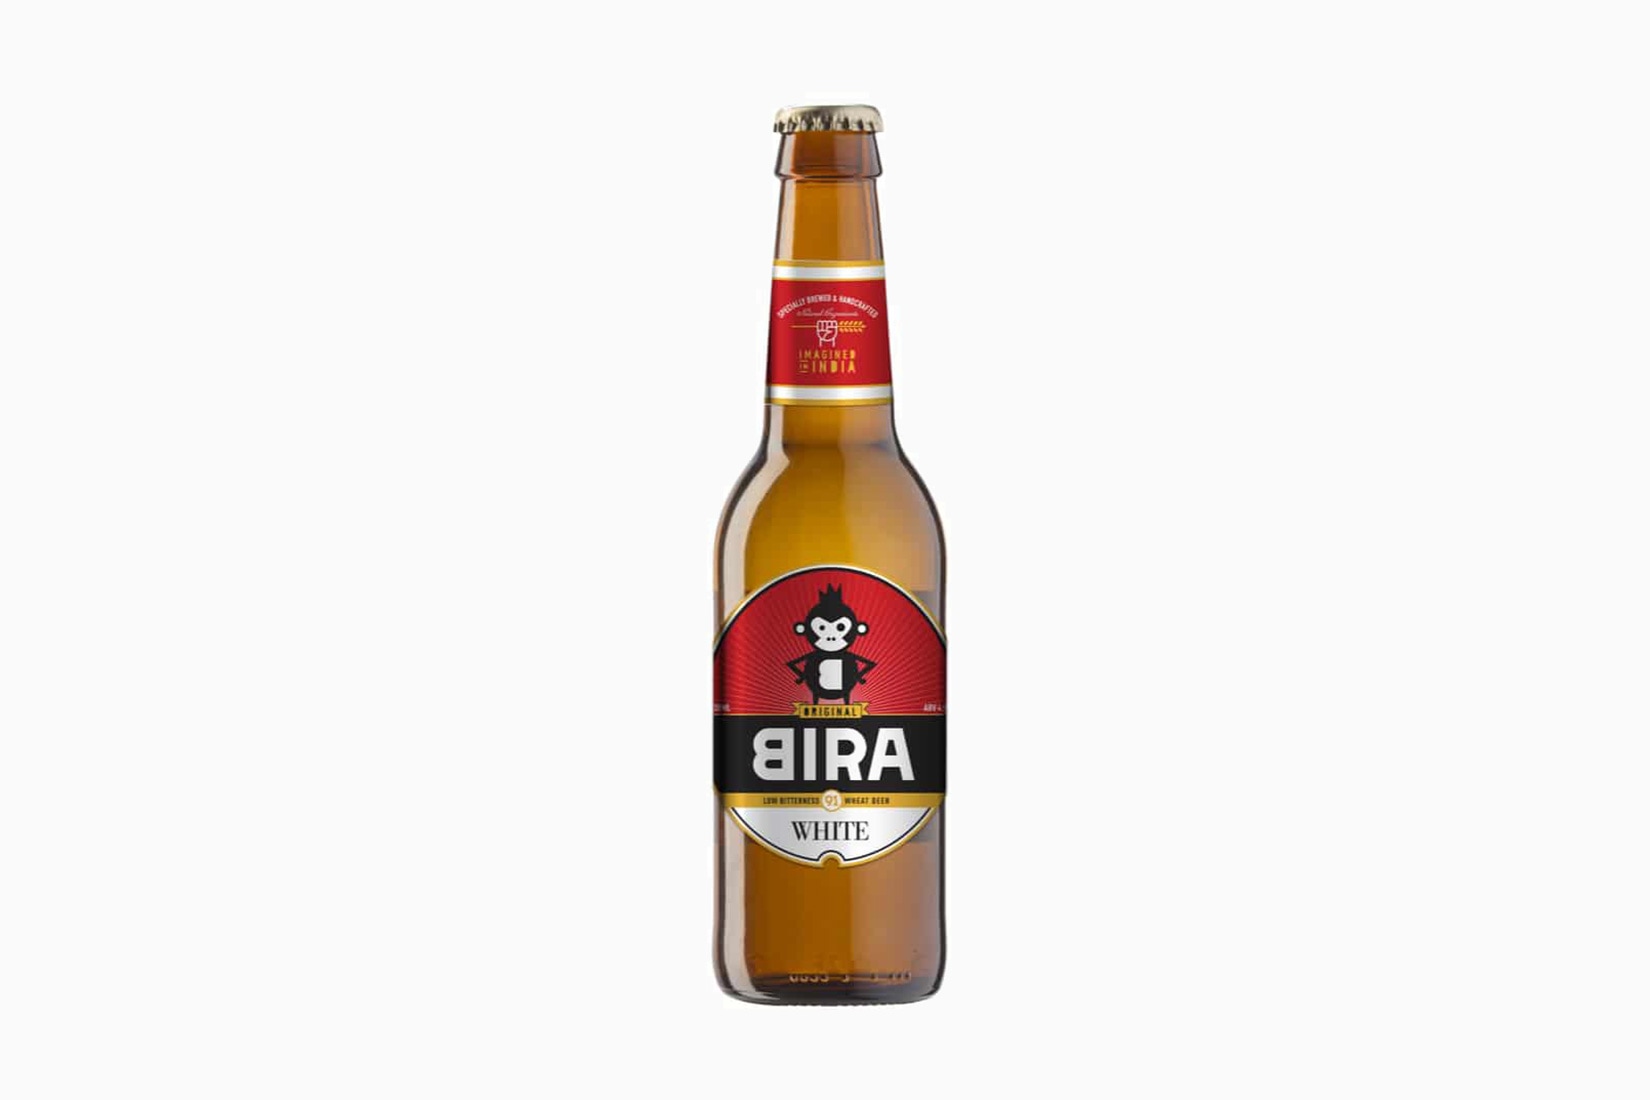 meilleures marques de bière bira 91 white ale - Luxe Digital